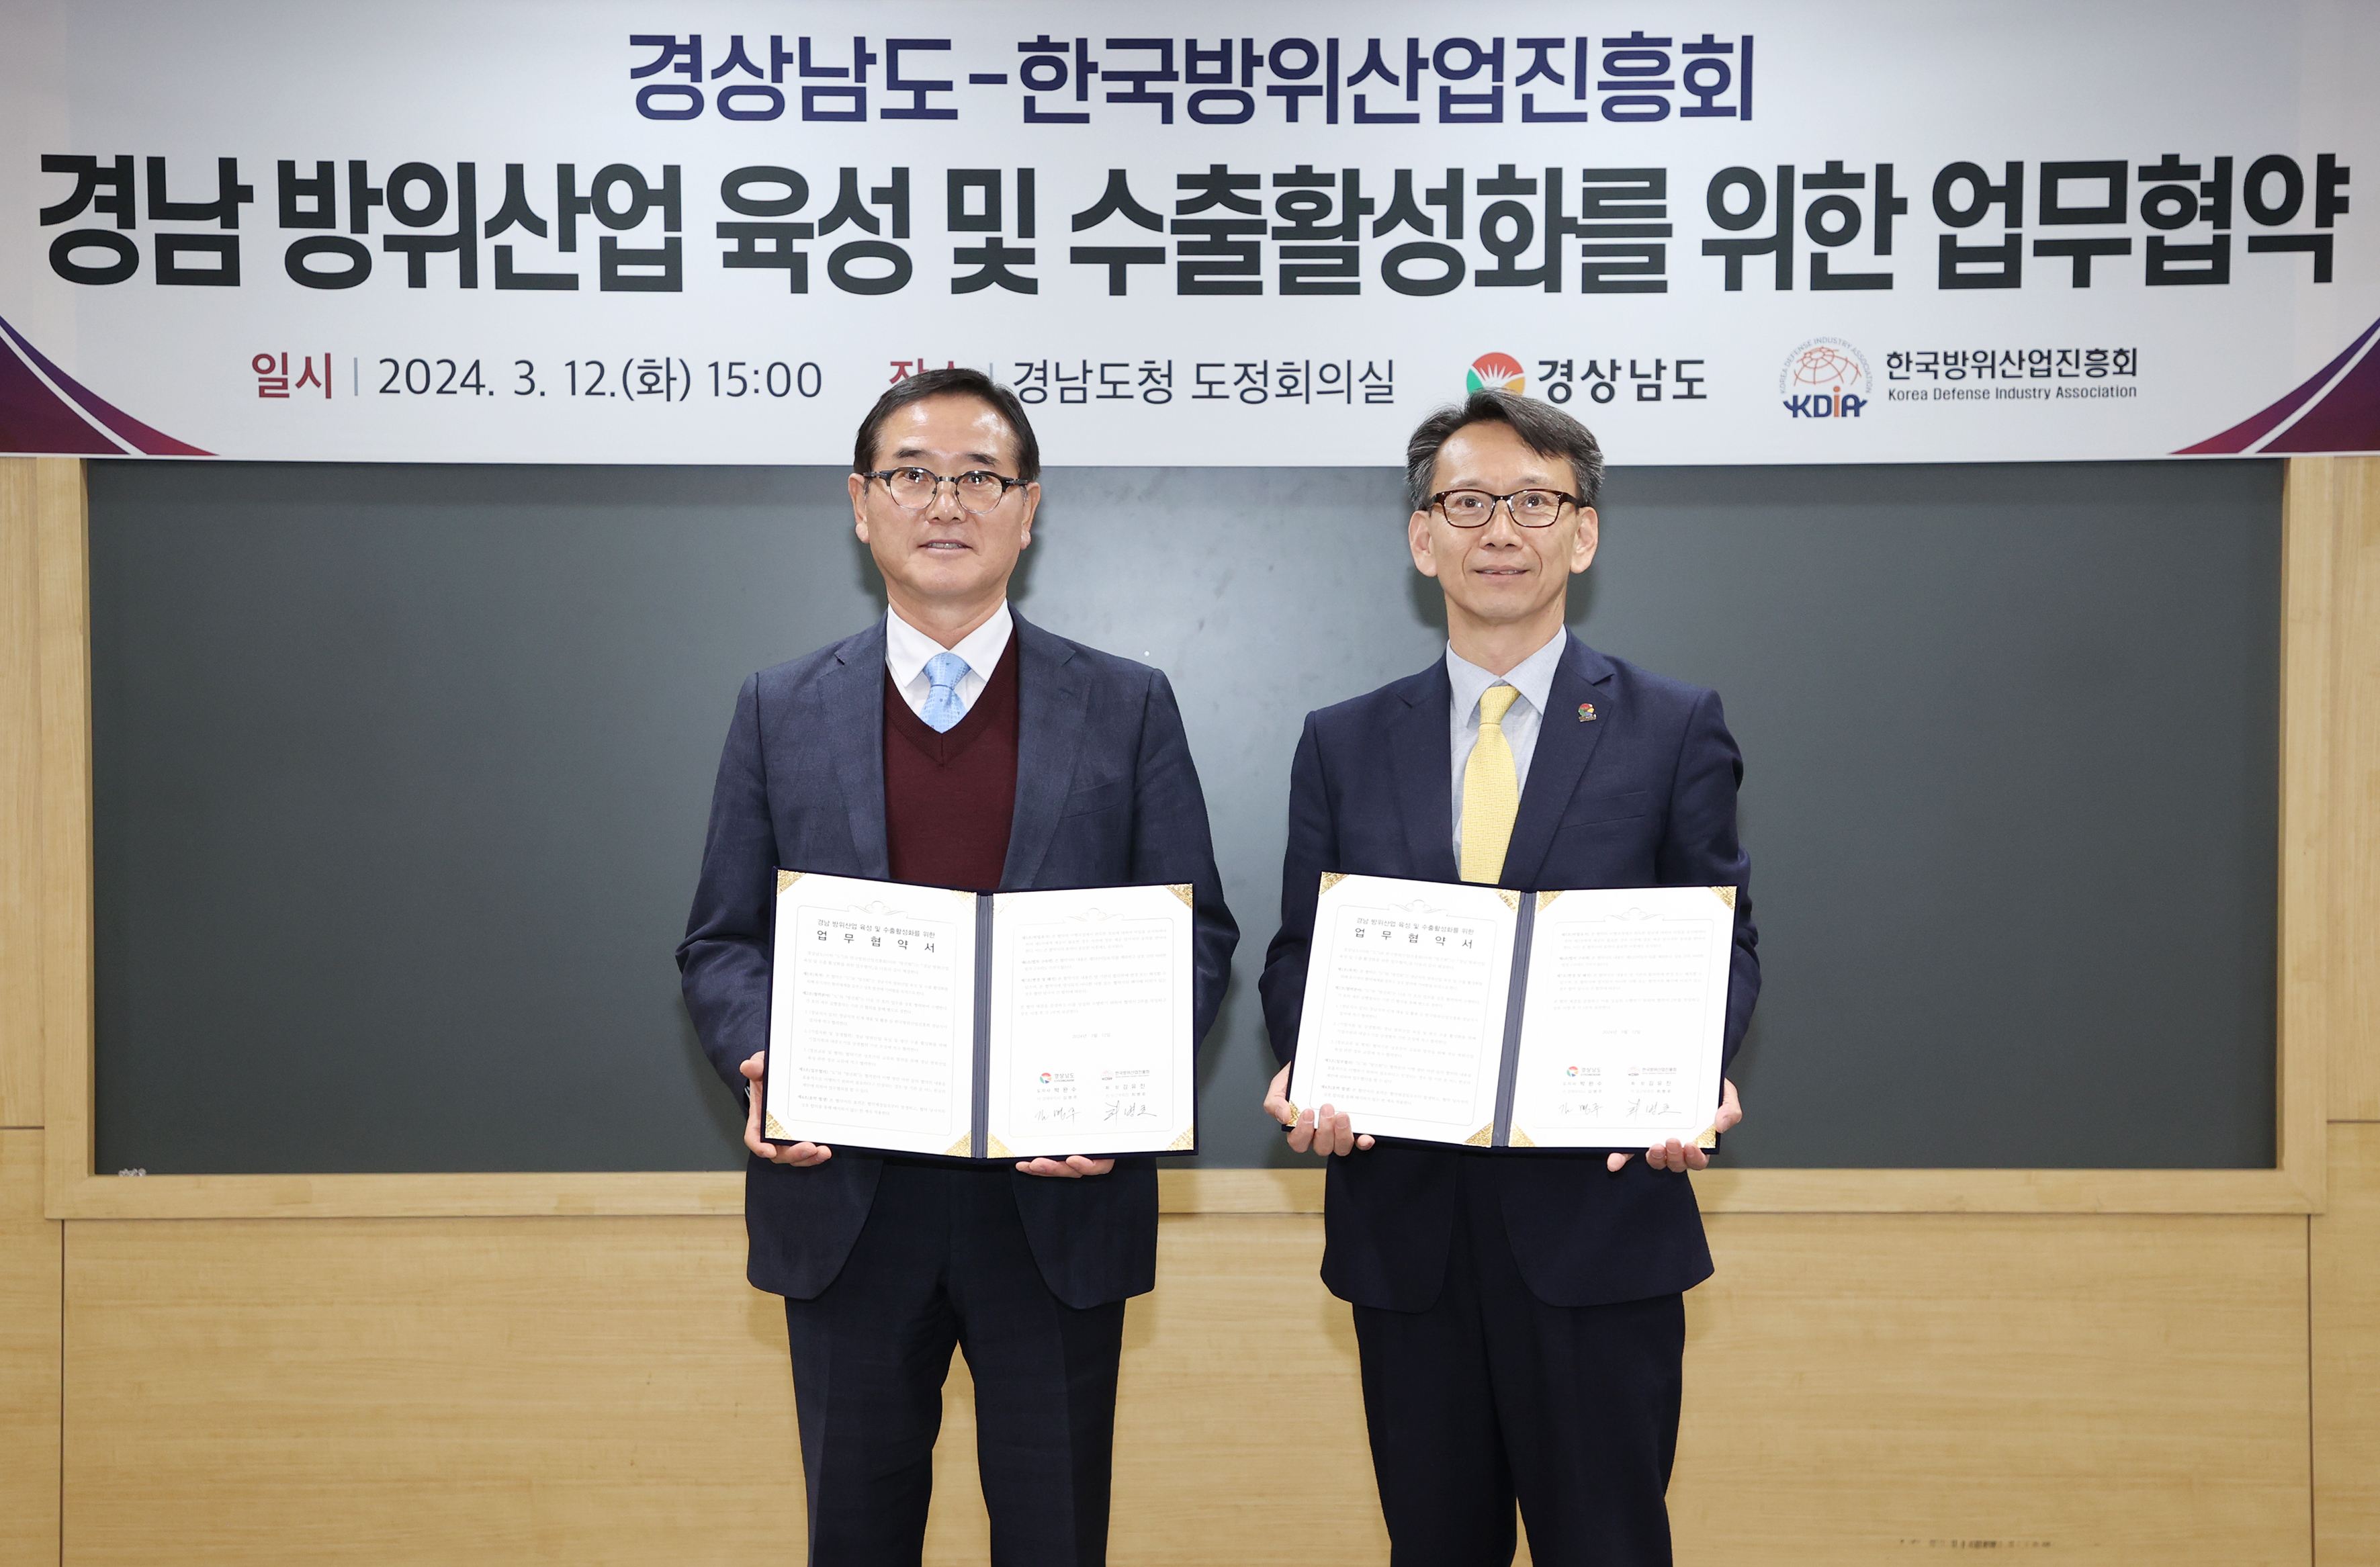 Tỉnh Gyeongnam và Hiệp hội Xúc tiến Công nghiệp Quốc phòng Hàn Quốc ký thỏa thuận hợp tác nhằm củng cố và thúc đẩy xuất khẩu ngành công nghiệp quốc phòng của tỉnh의 파일 이미지